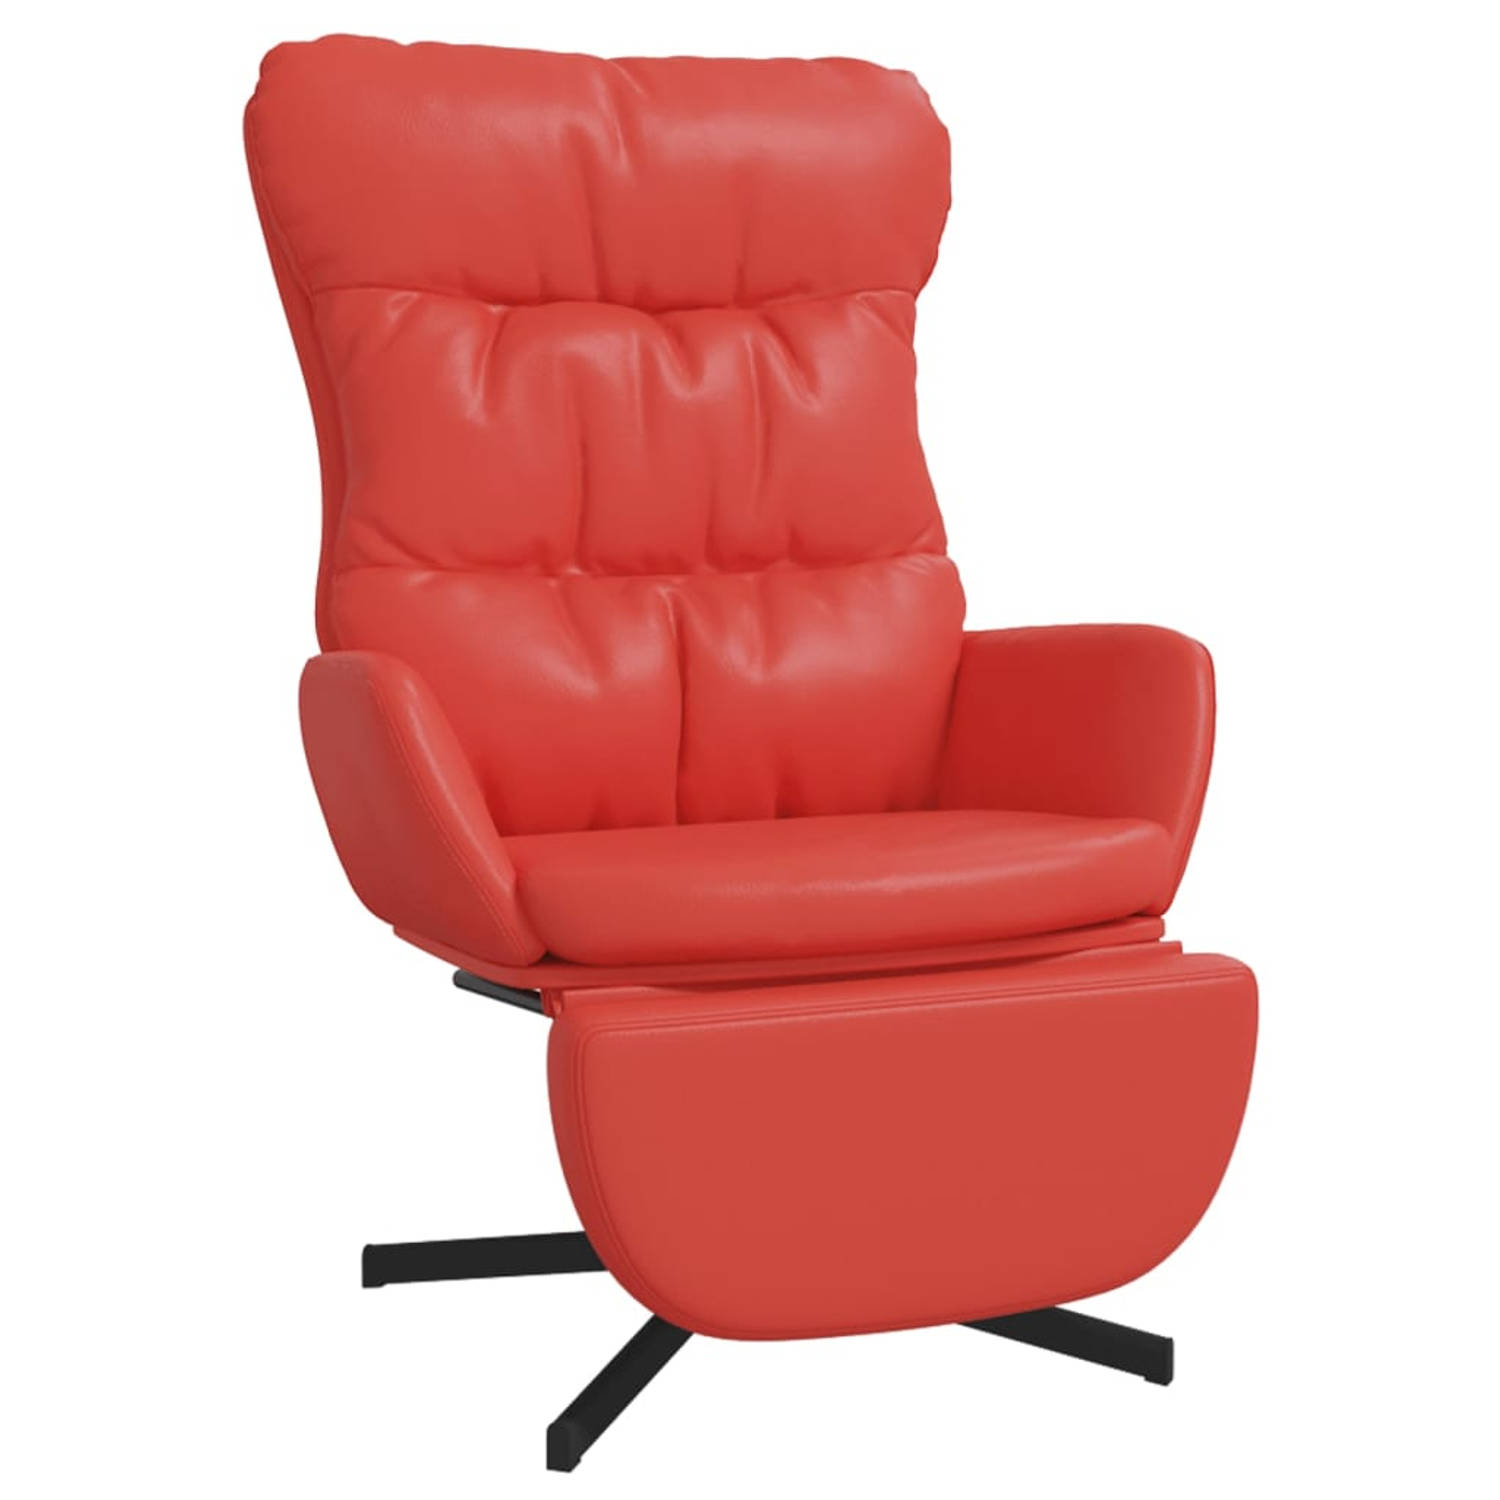 The Living Store Relaxstoel met voetensteun kunstleer rood - Fauteuil